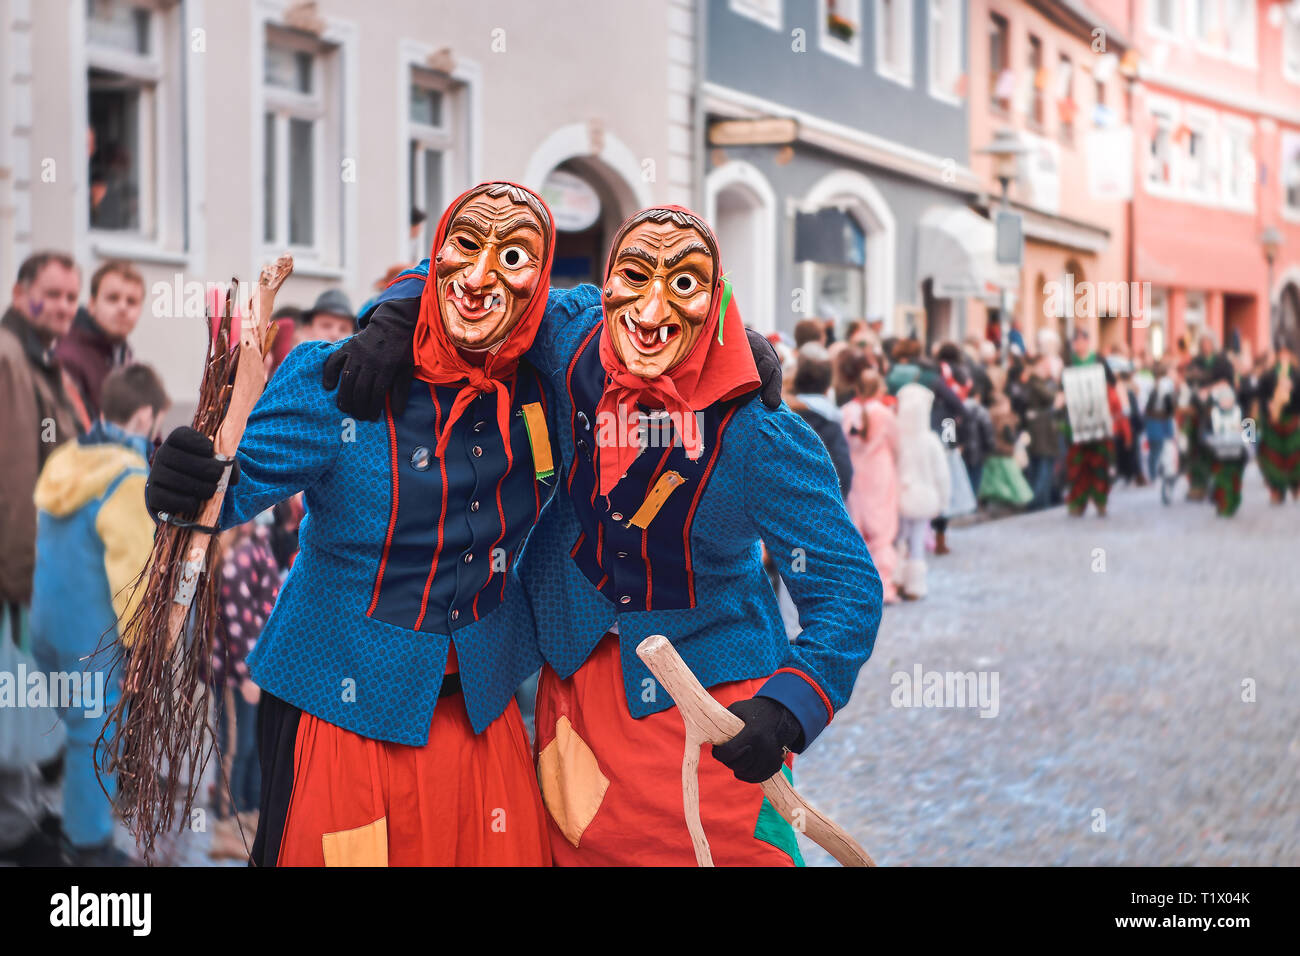 Zwei lustige Hexen sind einander umarmen. Straßenkarneval in Süddeutschland - Schwarz. Stockfoto